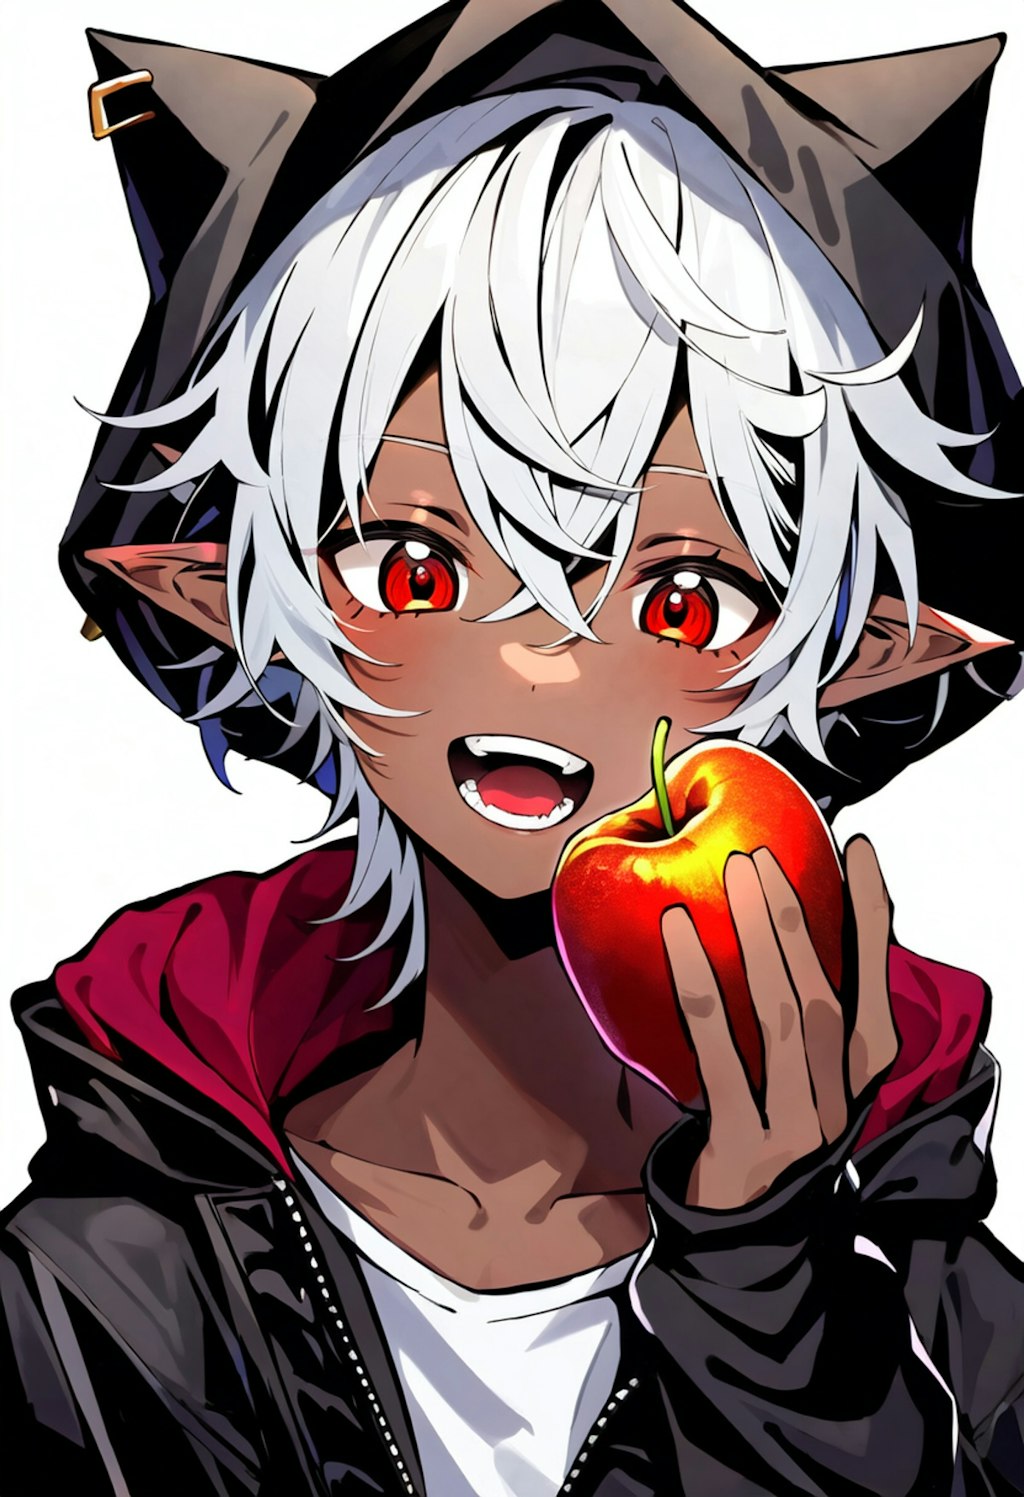 リンゴを食べるダークエルフの男の子